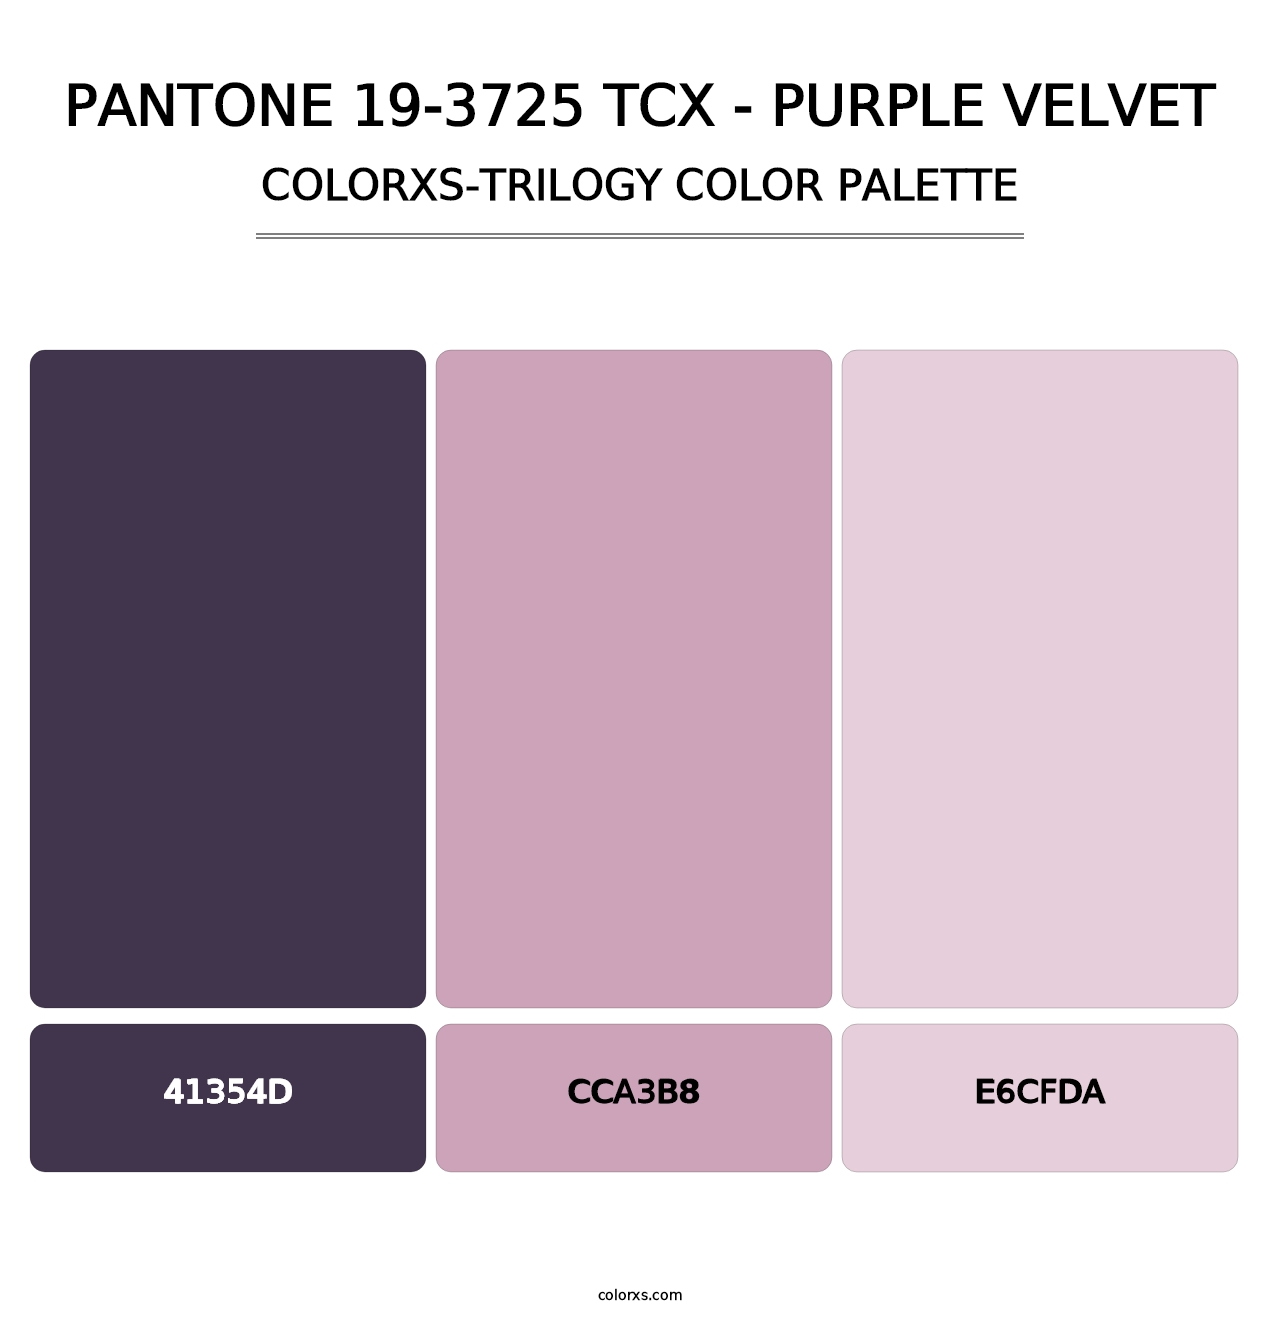 PANTONE 19-3725 TCX - Purple Velvet - Colorxs Trilogy Palette